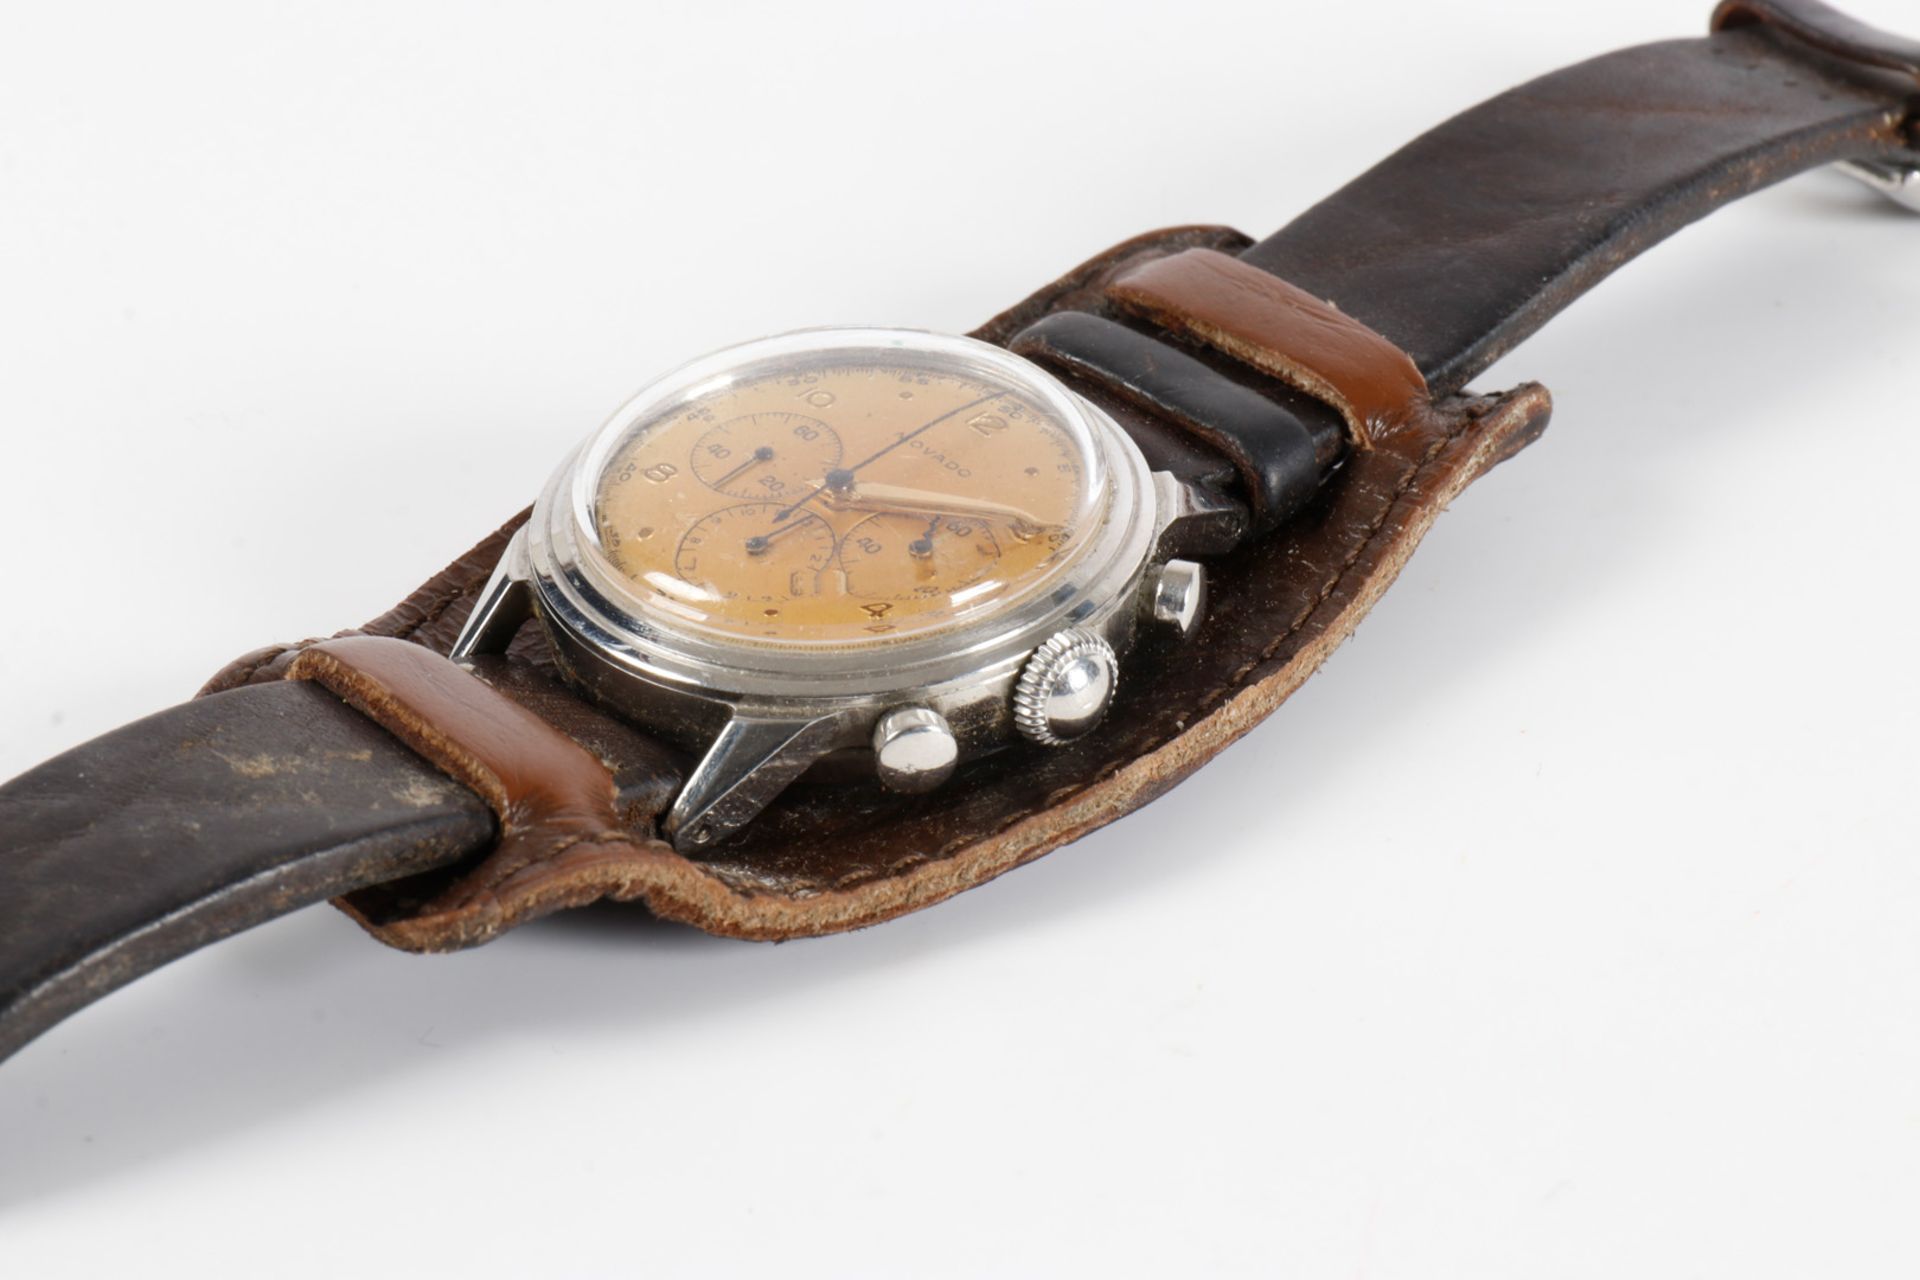 Alte Movado Herrenarmbanduhr Chronograph, Nr. 9280, Handaufzug intakt, mit kleiner Sekunde, Stoppzei - Bild 4 aus 4